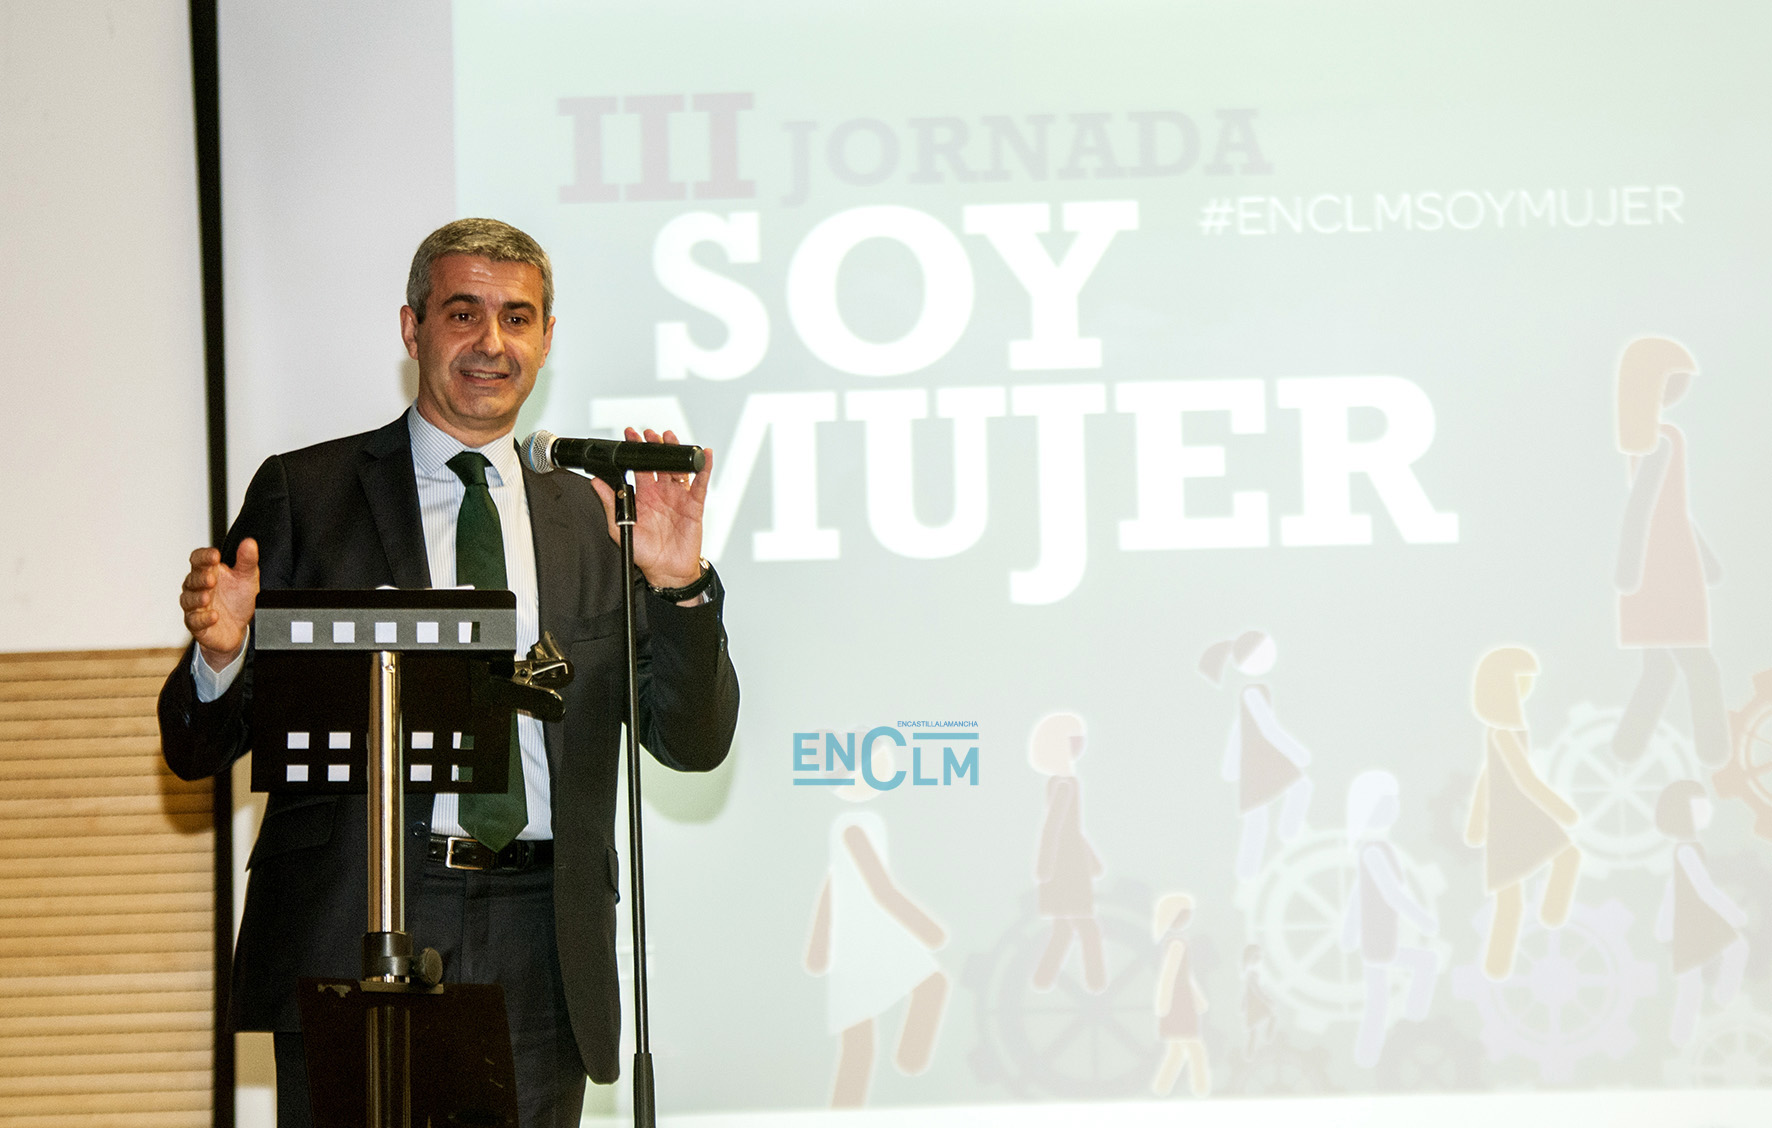 Álvaro Gutiérrez, presidente de la Diputación de Toledo, ha recalcado que "nuestro papel en la vida no es ser ciudadanos de segunda ni sumisos ni sumisas".